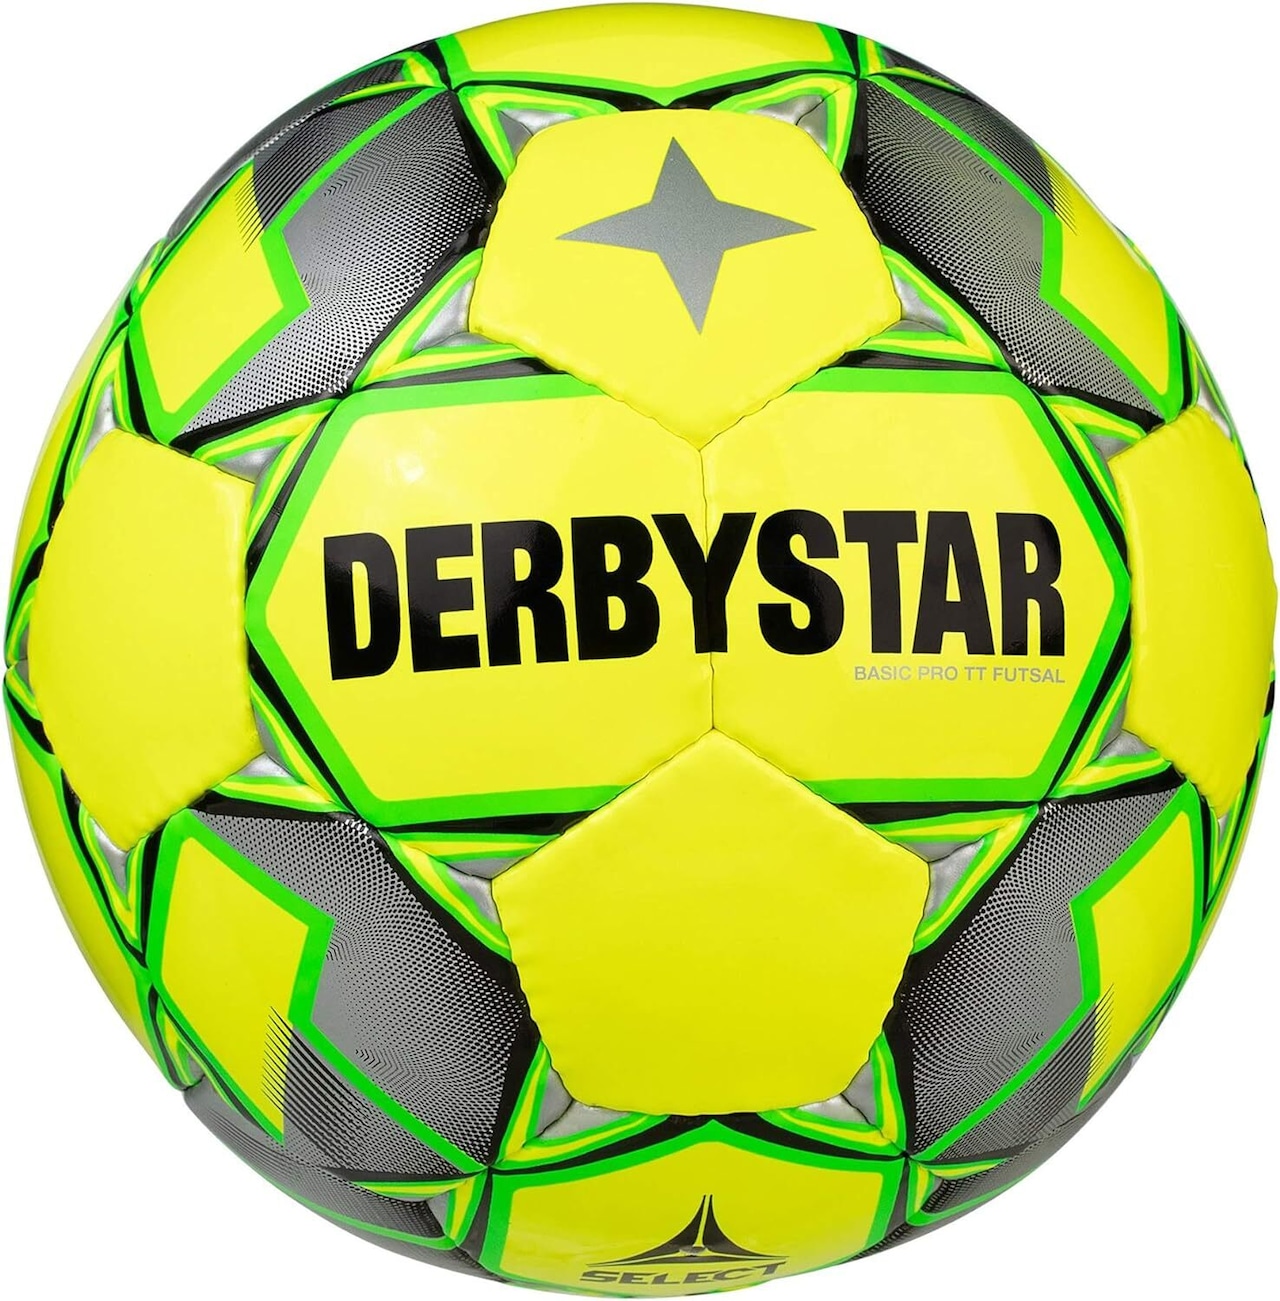 ダービースター(DERBYSTAR) フットサルボール 4号球 BASIC PRO TT FUTSAL 中学生 高校生 社会人用